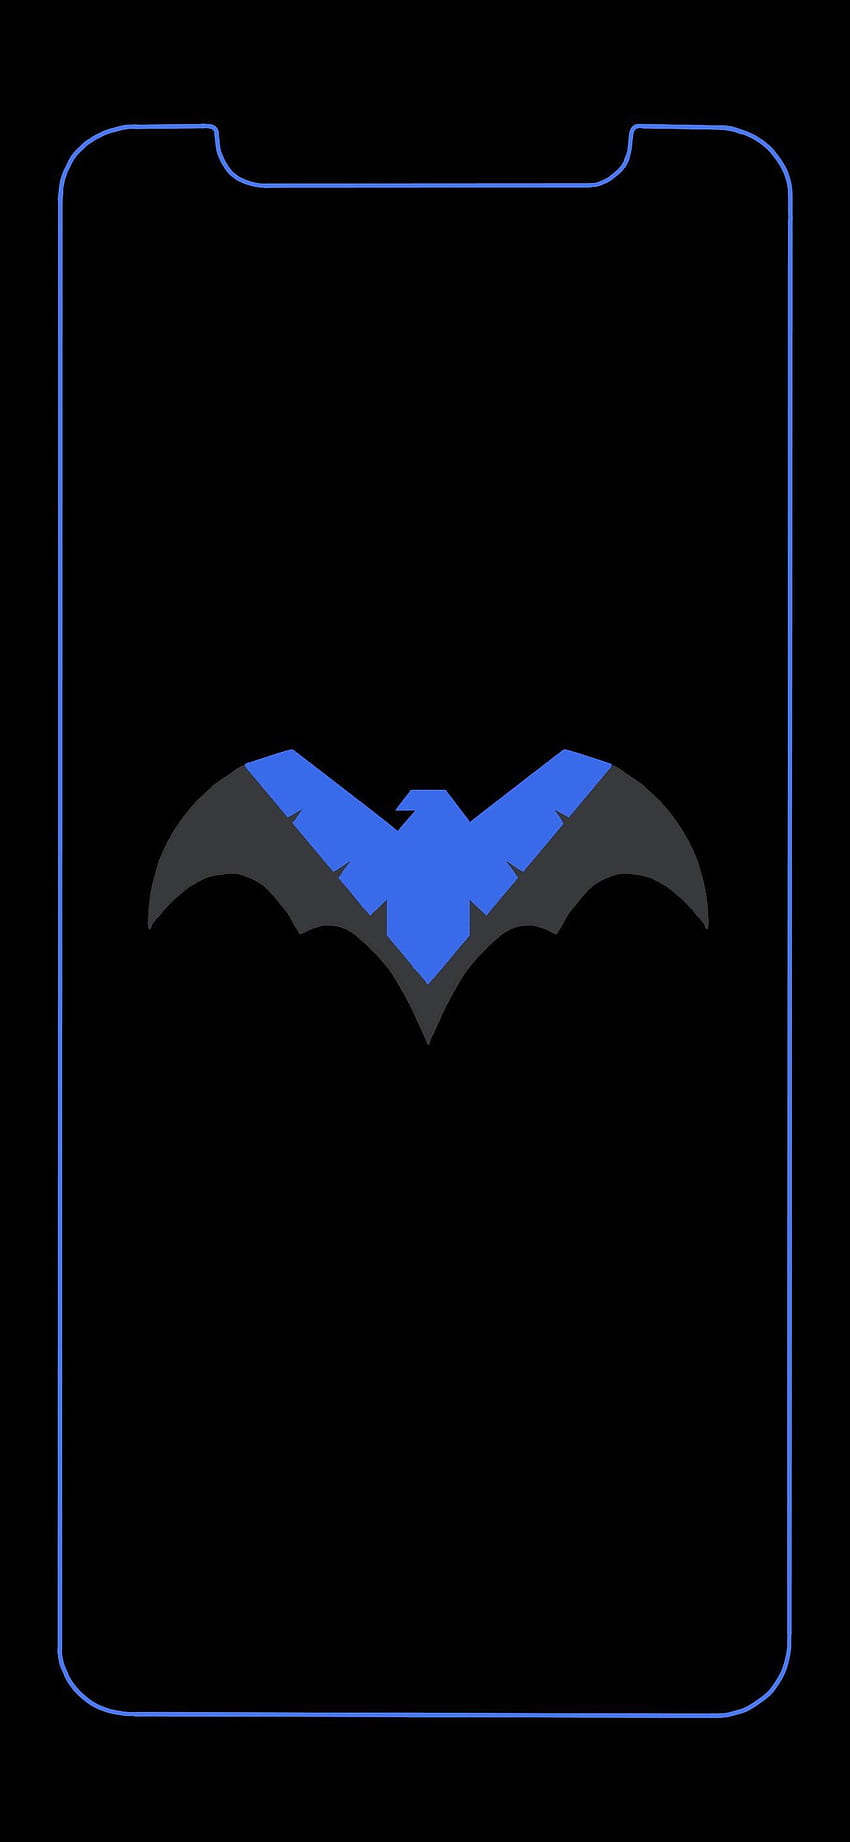 Nightwing tattoo : r/Nightwing